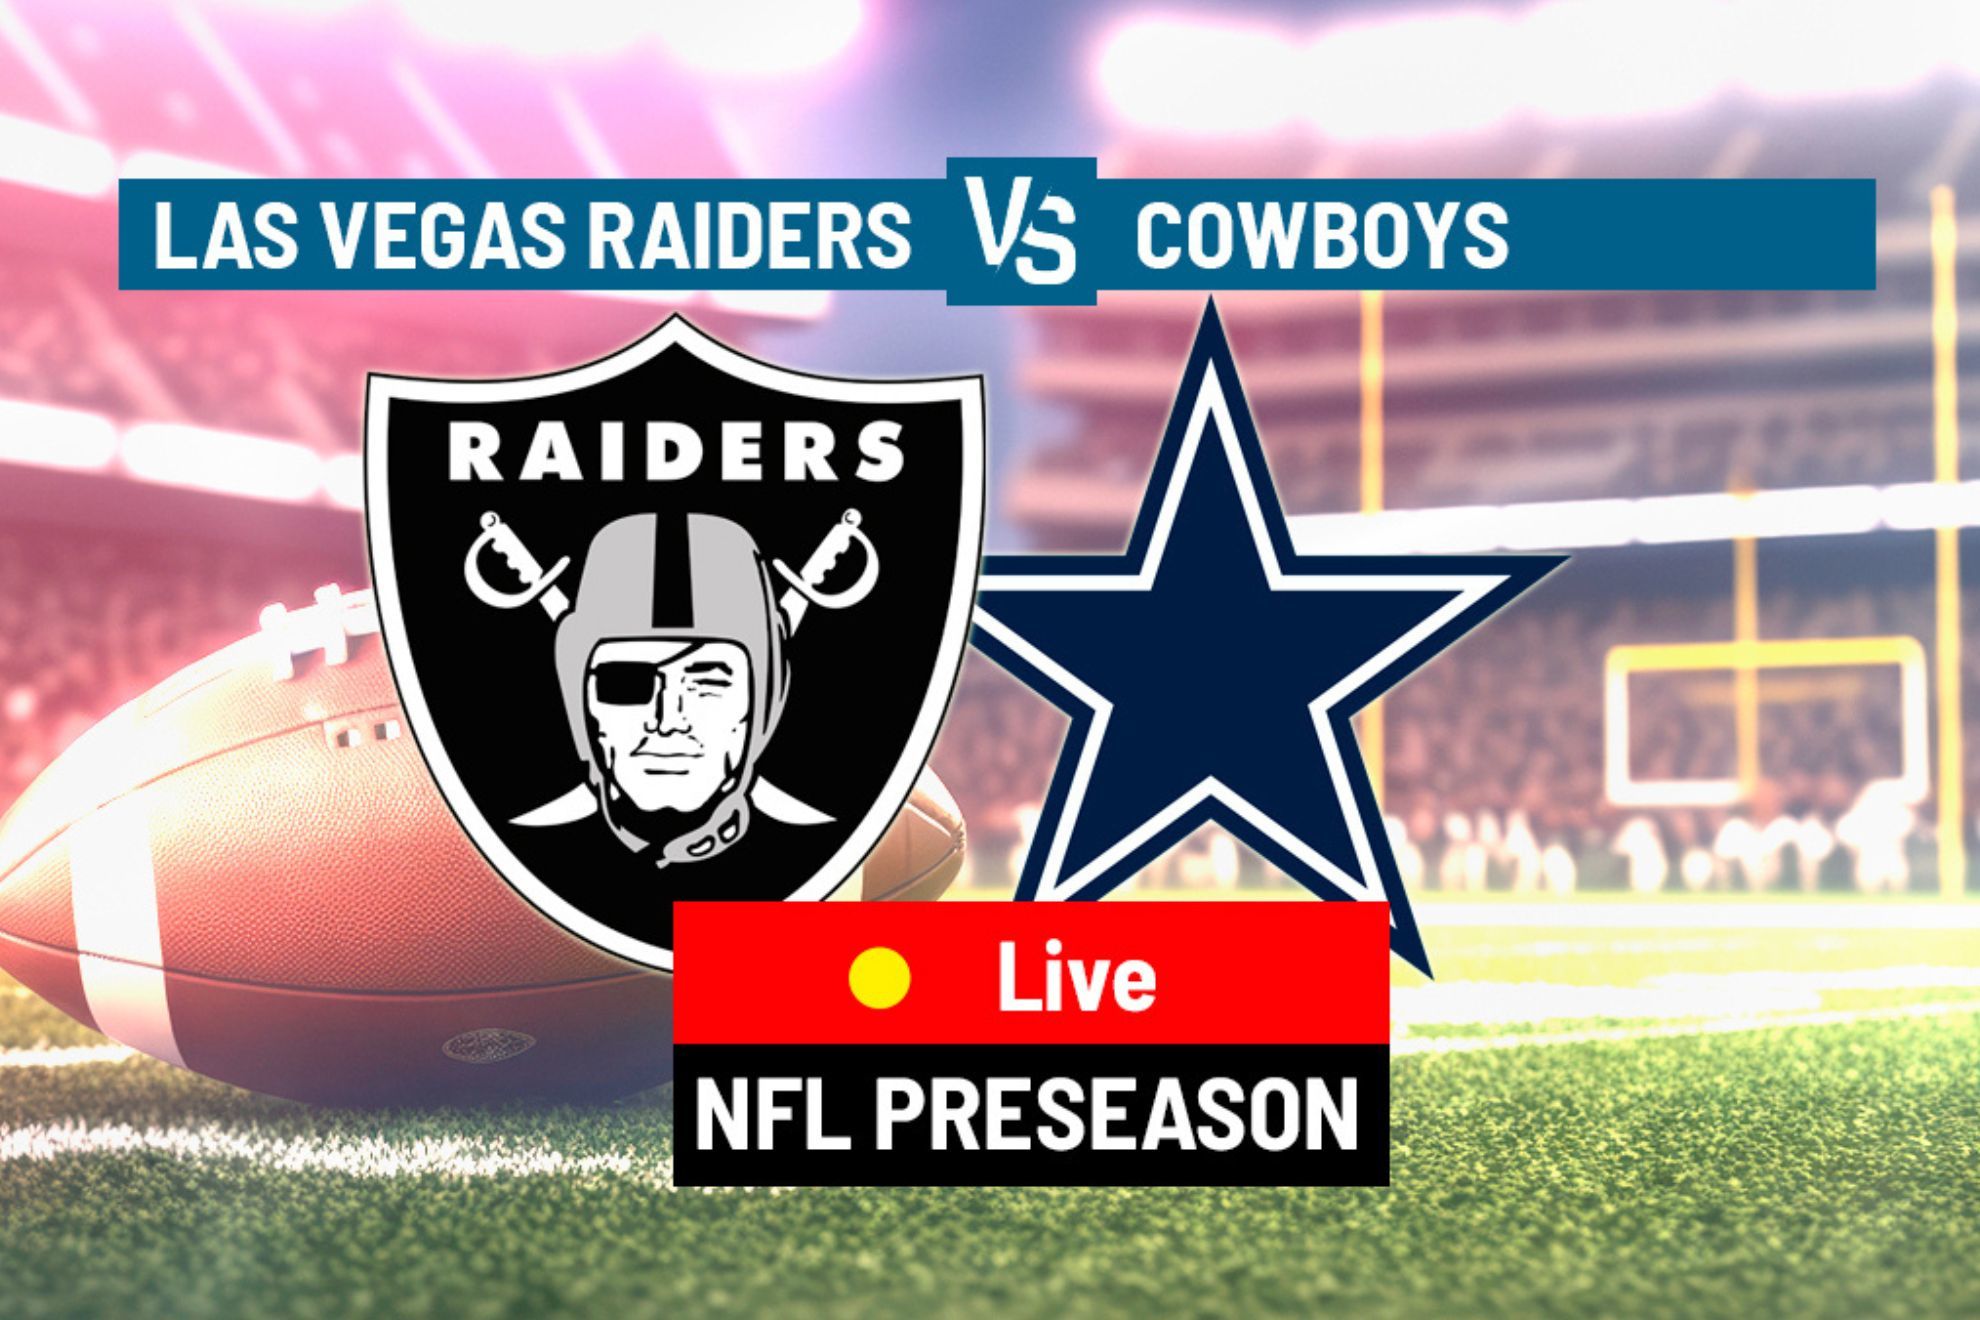 Raiders visit Cowboys in Week 4 of NFL preseason